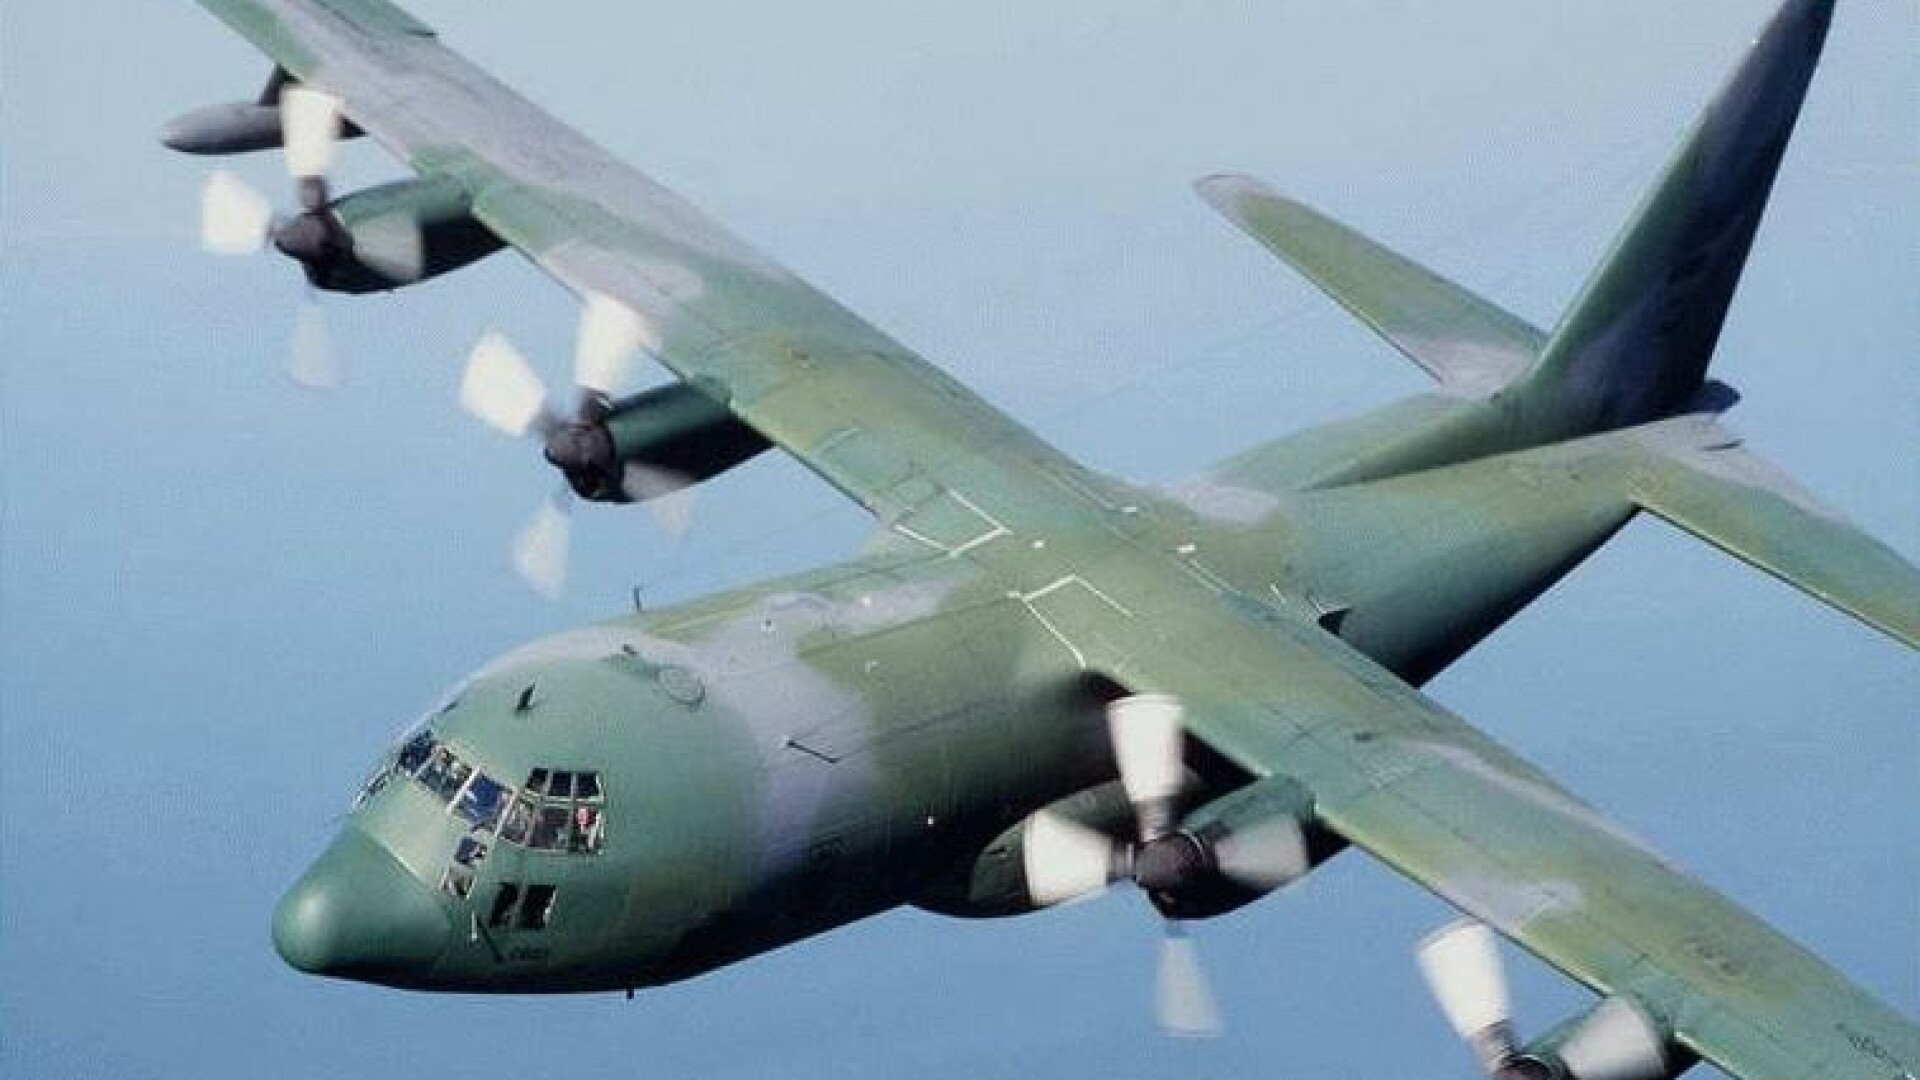 Hercules C-130